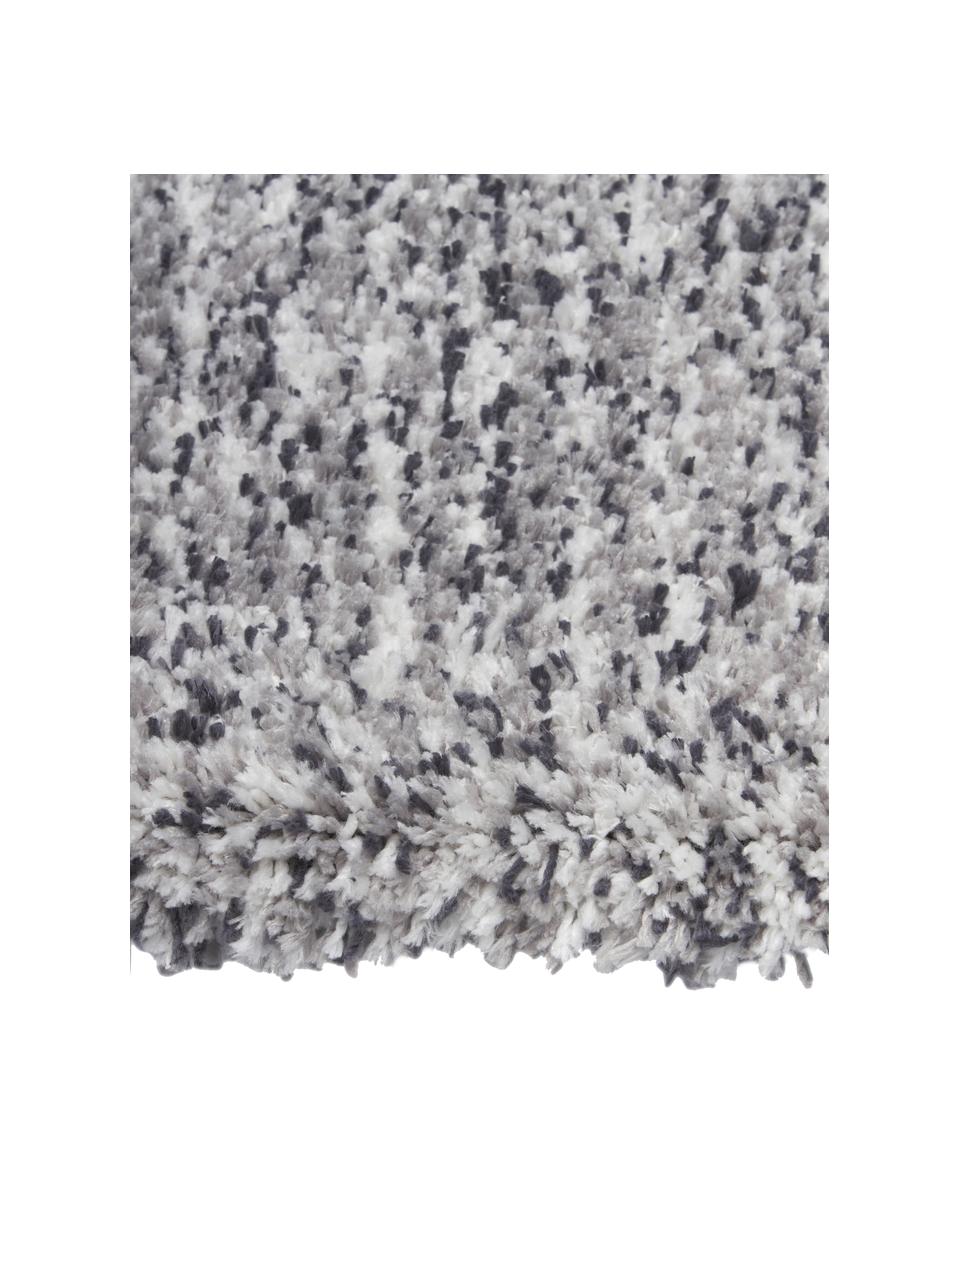 Fluffy gemêleerd hoogpolig vloerkleed Marsha in grijs, Grijstinten, B 80 x L 150 cm (maat XS)